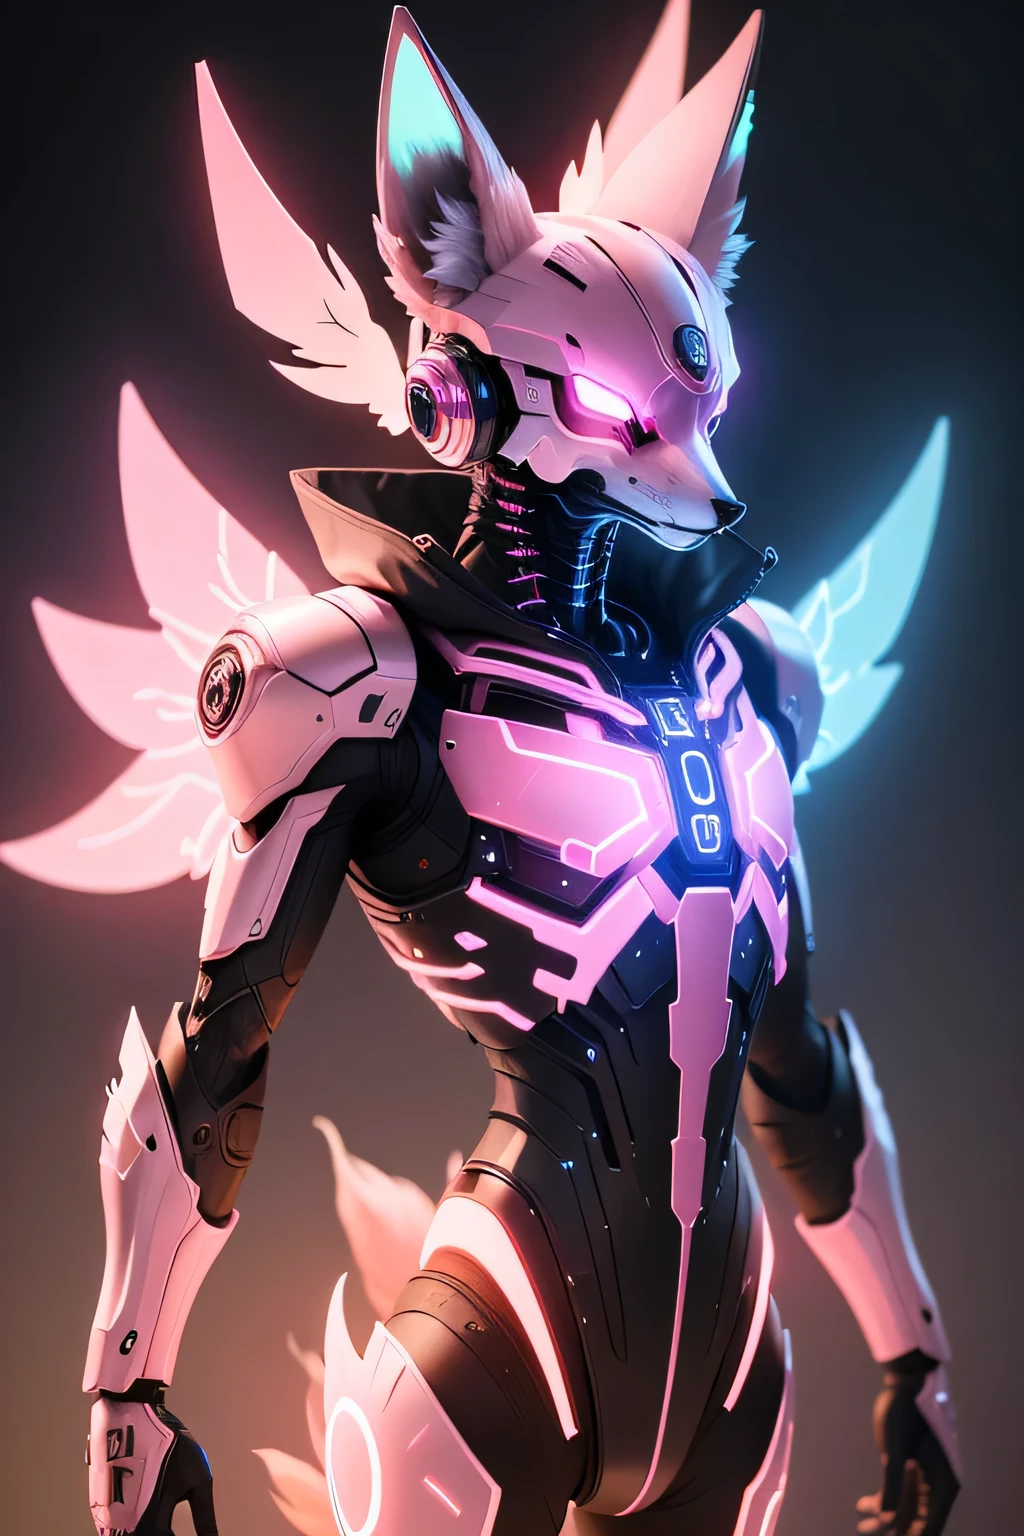 un renard rose brillant avec un androïde cyborg métallique regardant un crâne de renard comme un visage avec des griffes métalliques des ailes bleues rougeoyantes flottant autour de son dos